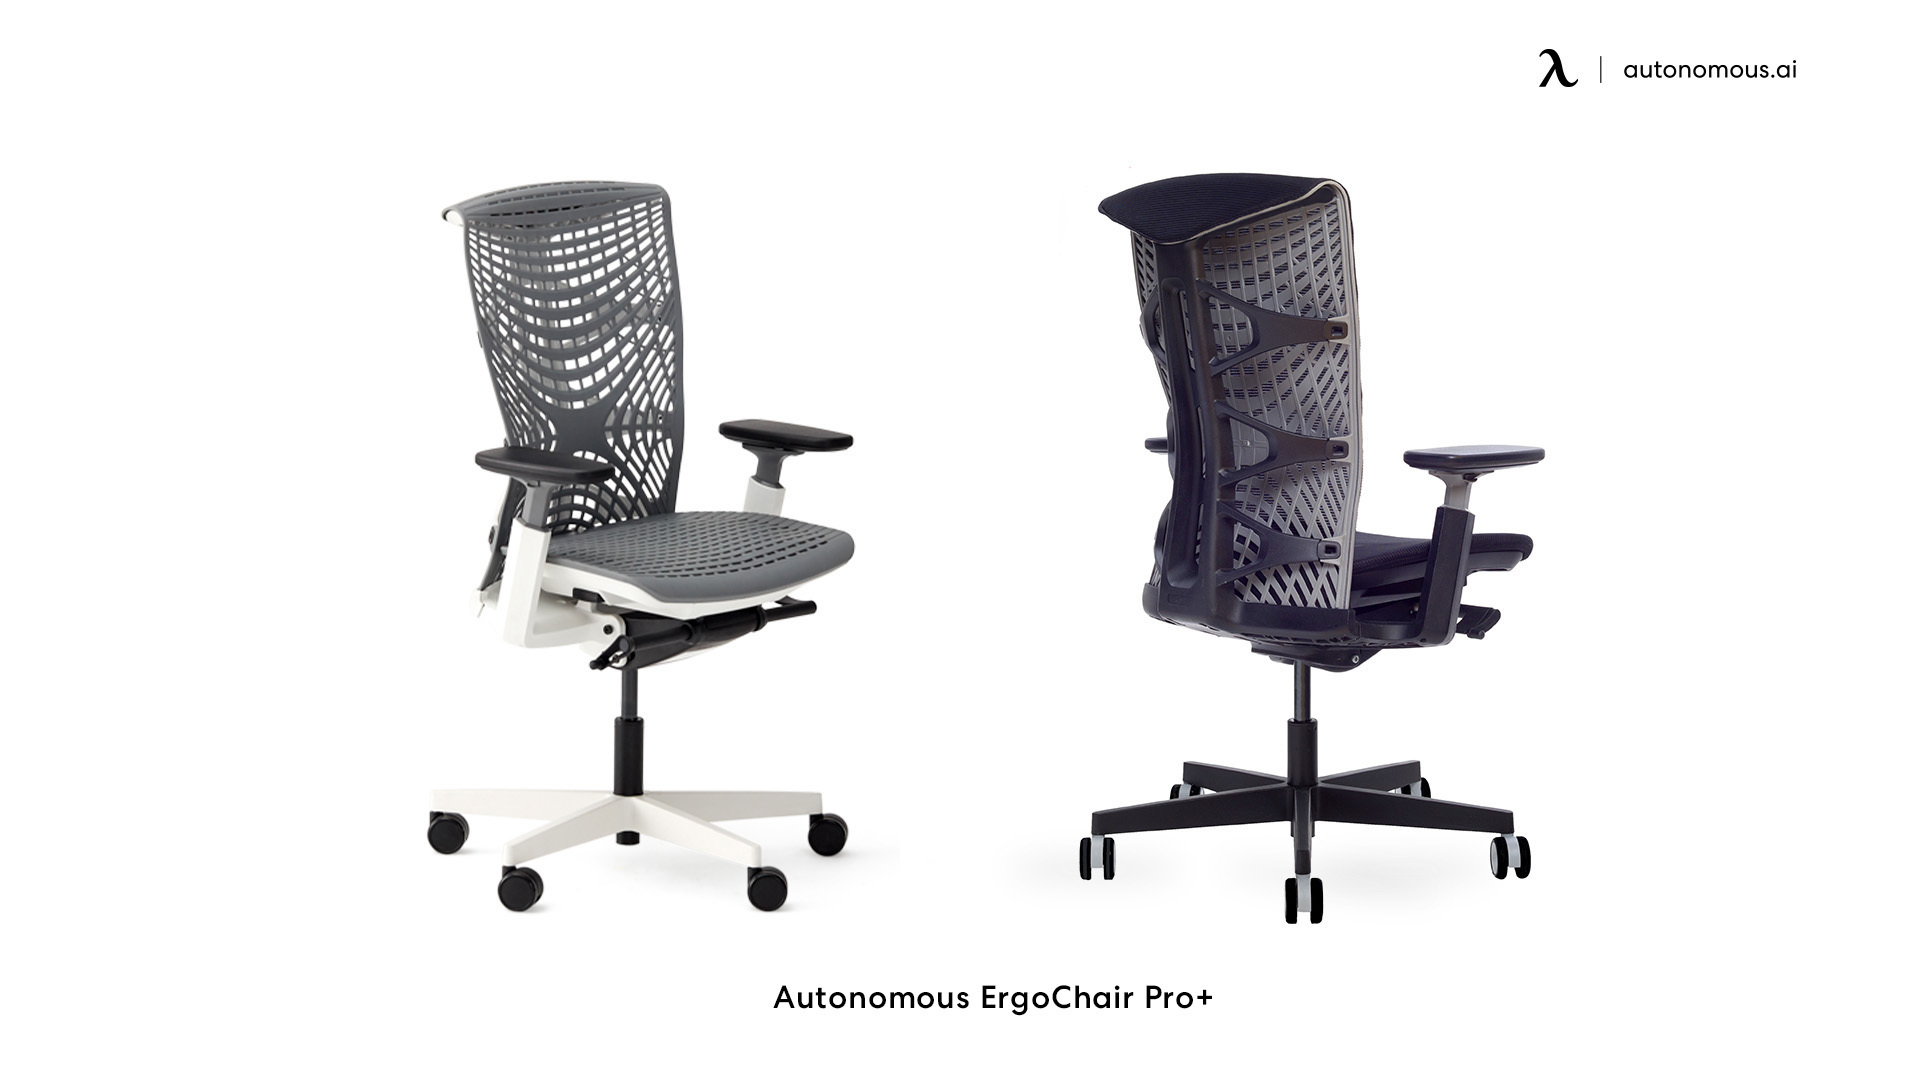 Autonomous ErgoChair Pro+ comfortable desk chair